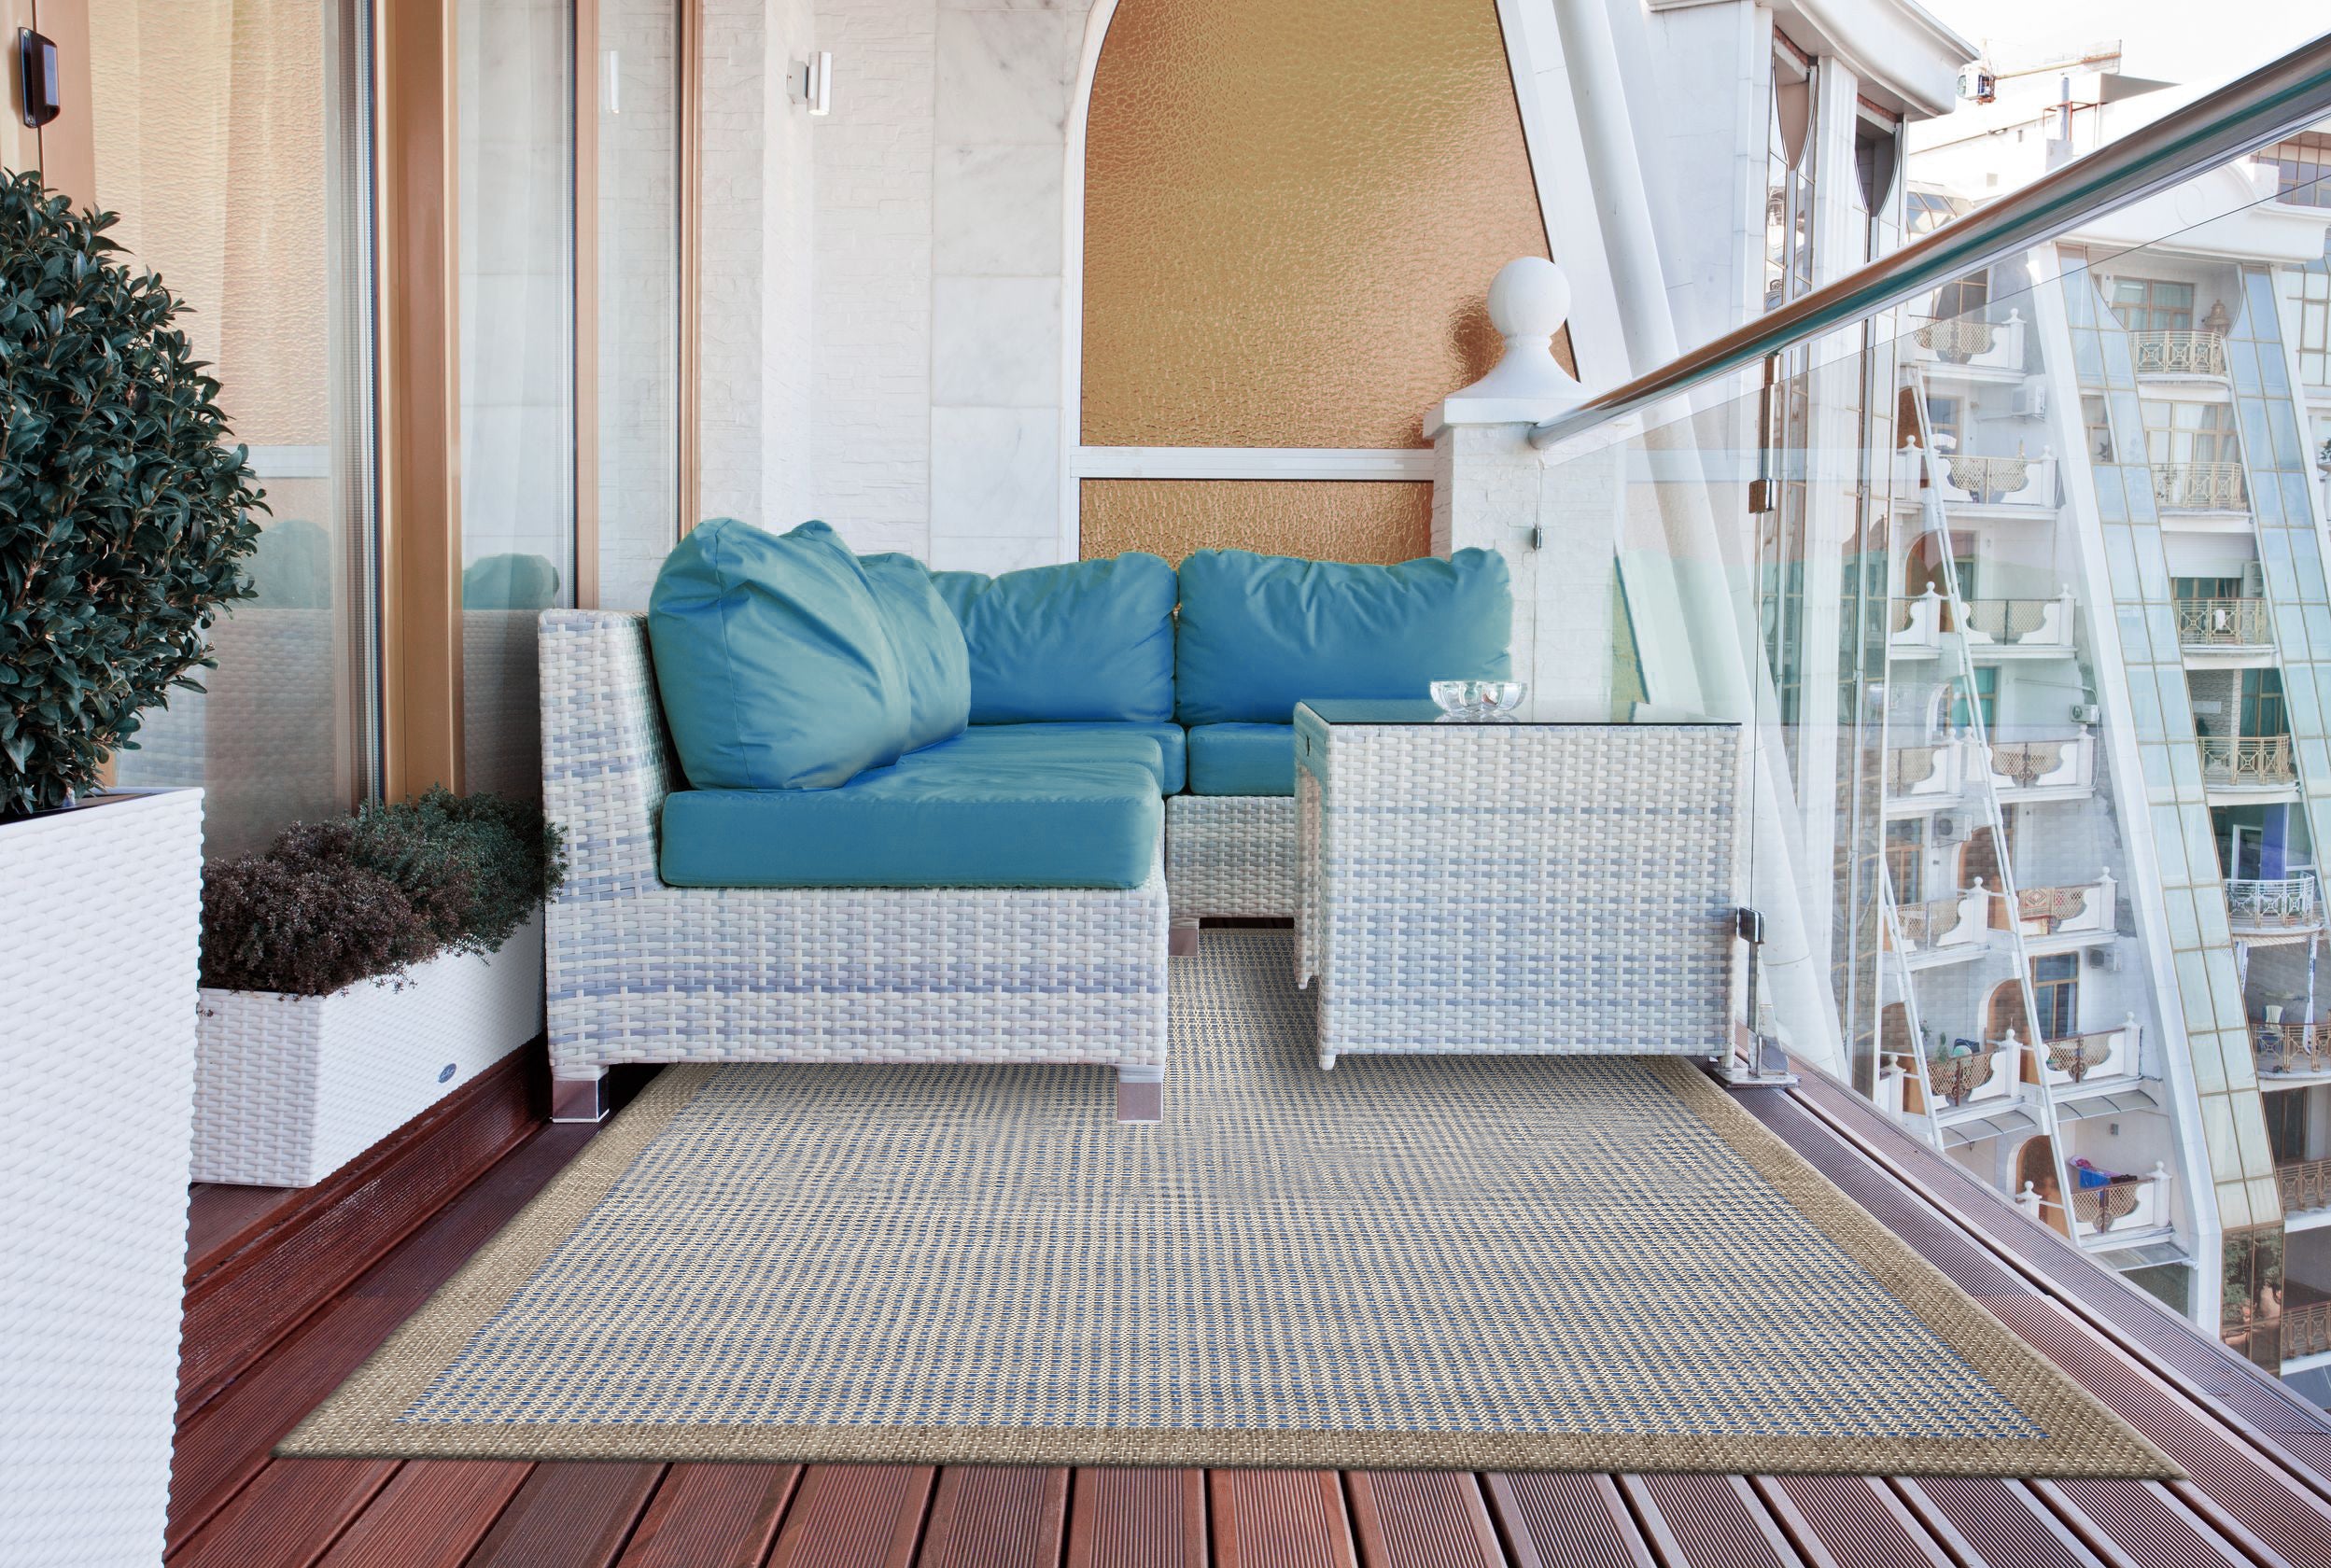 Tappeto da esterno per balcone giardino terrazzo salotto resistente a pioggia sole raggi UV antimacchia antimuffa retro antiscivolo BLU - SmartDecoHome